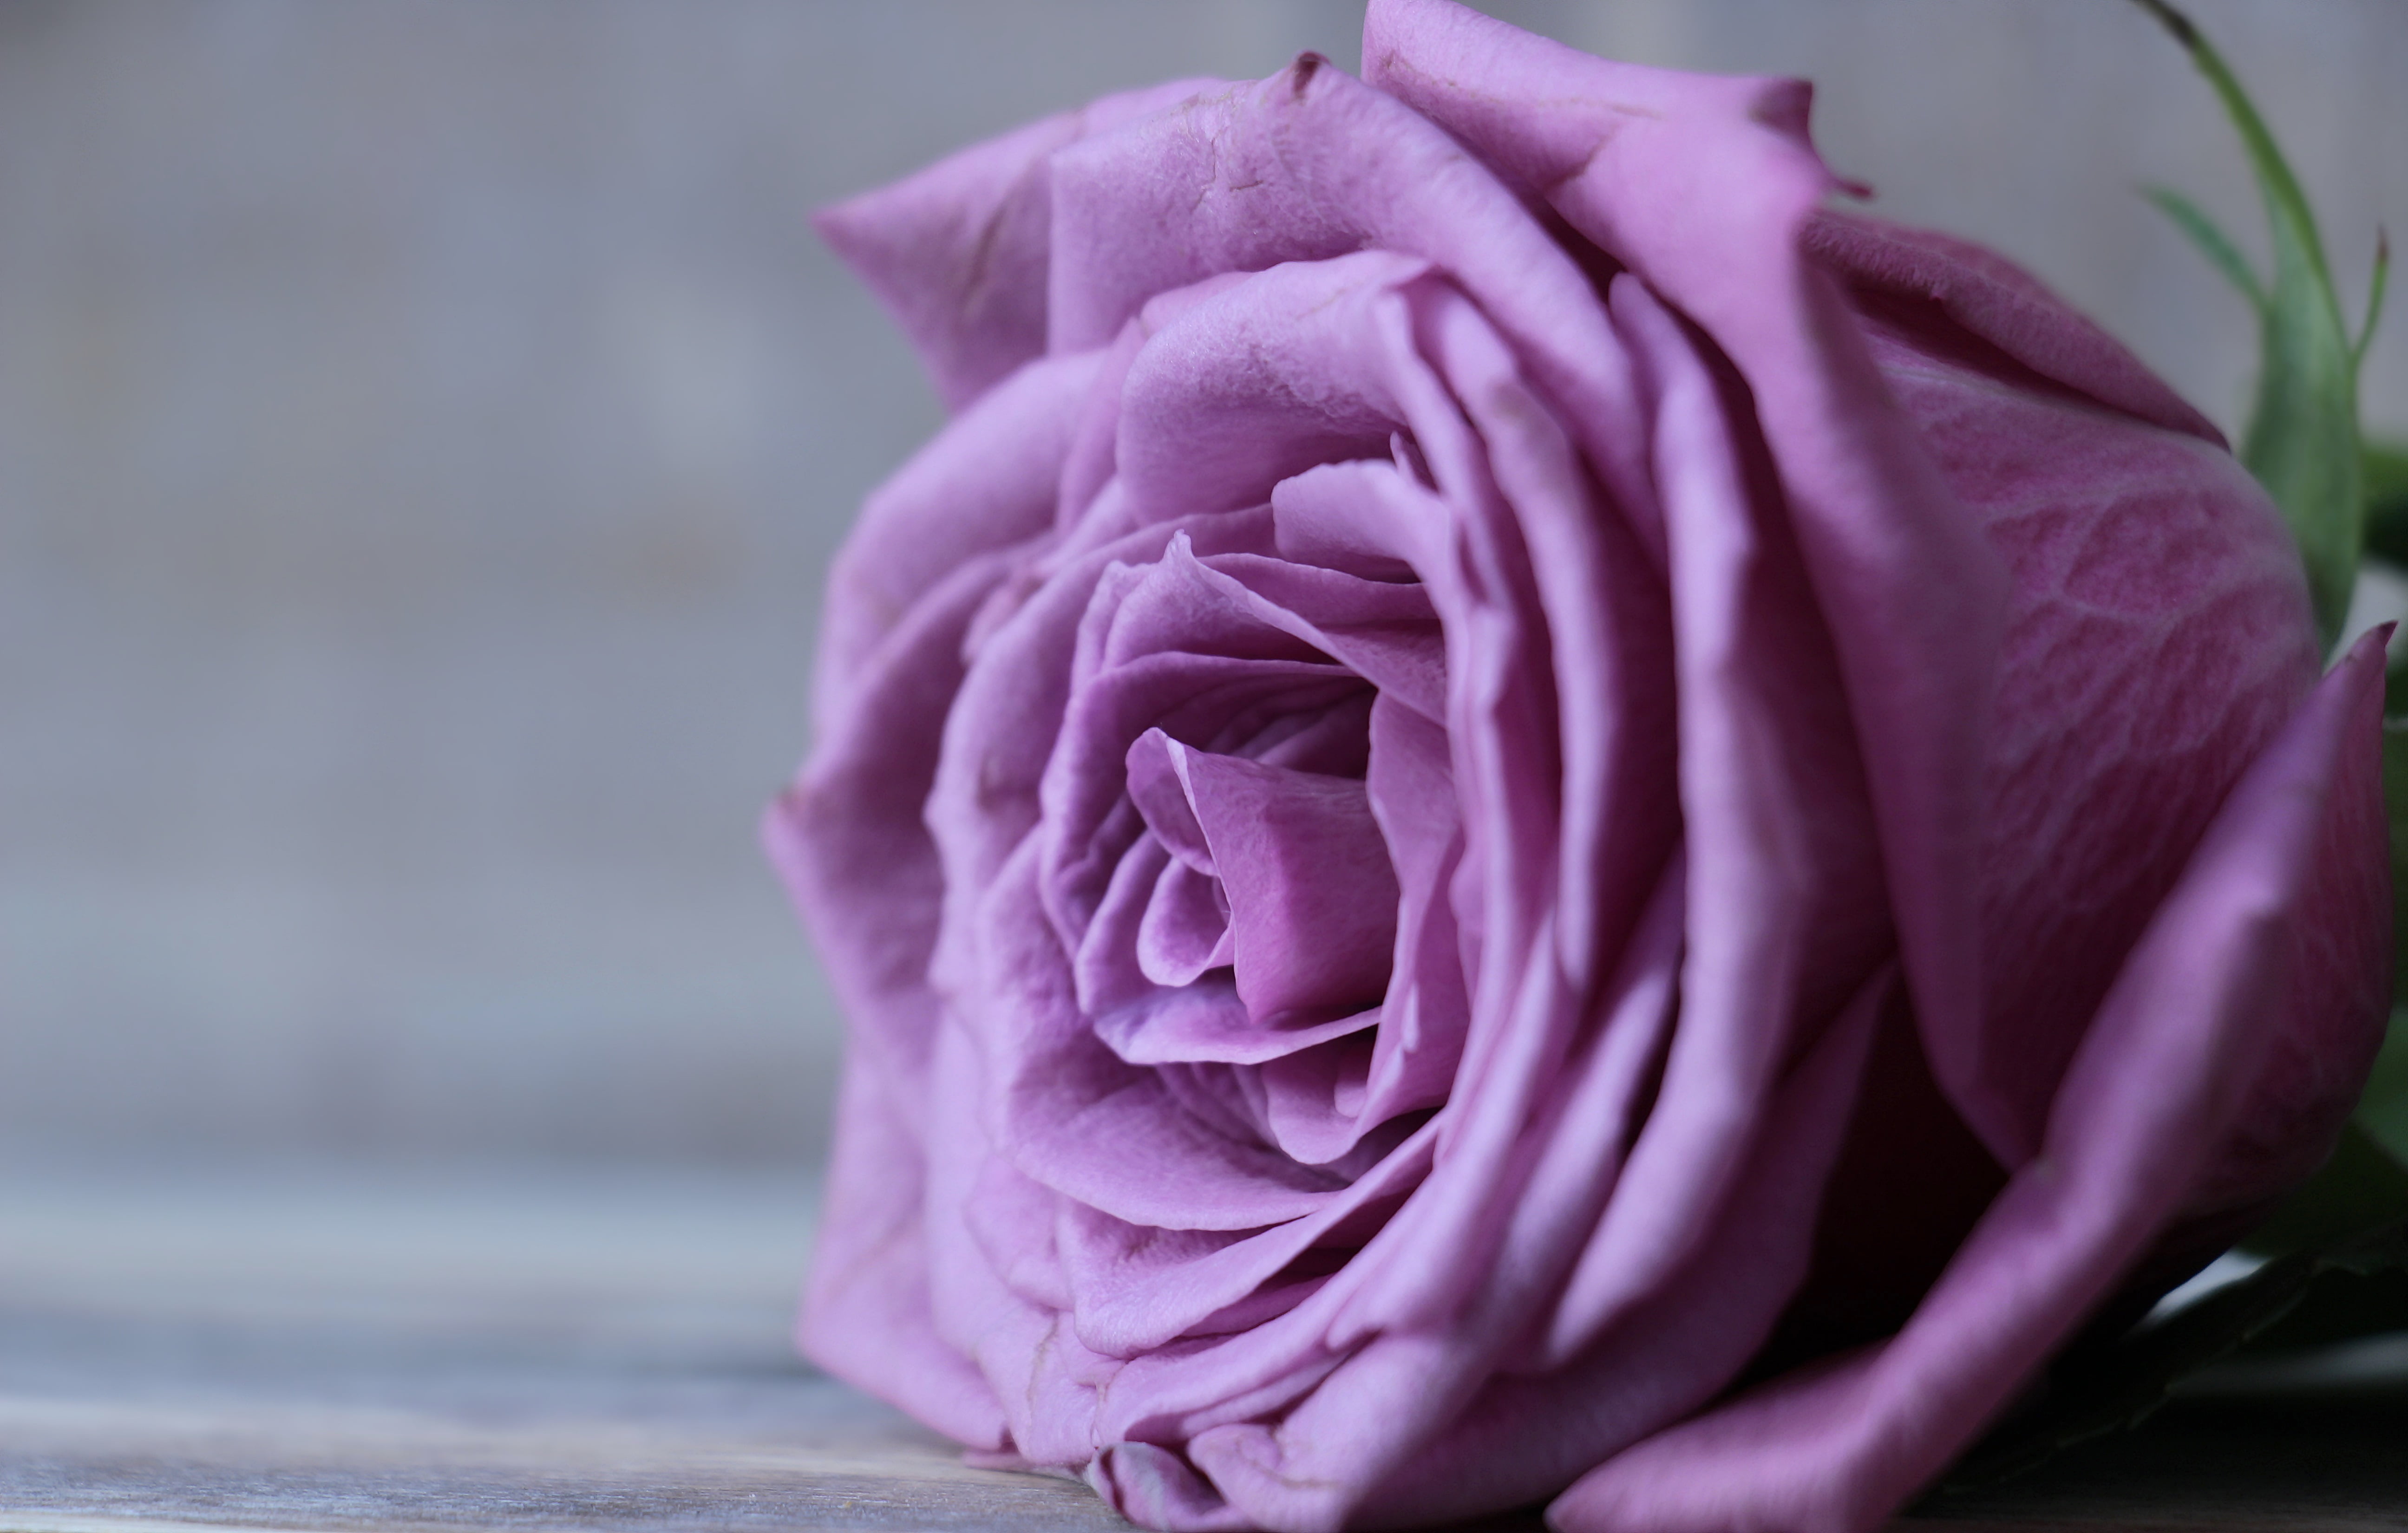 紫玫瑰 紫色的花朵 花束 - Pixabay上的免费照片 - Pixabay